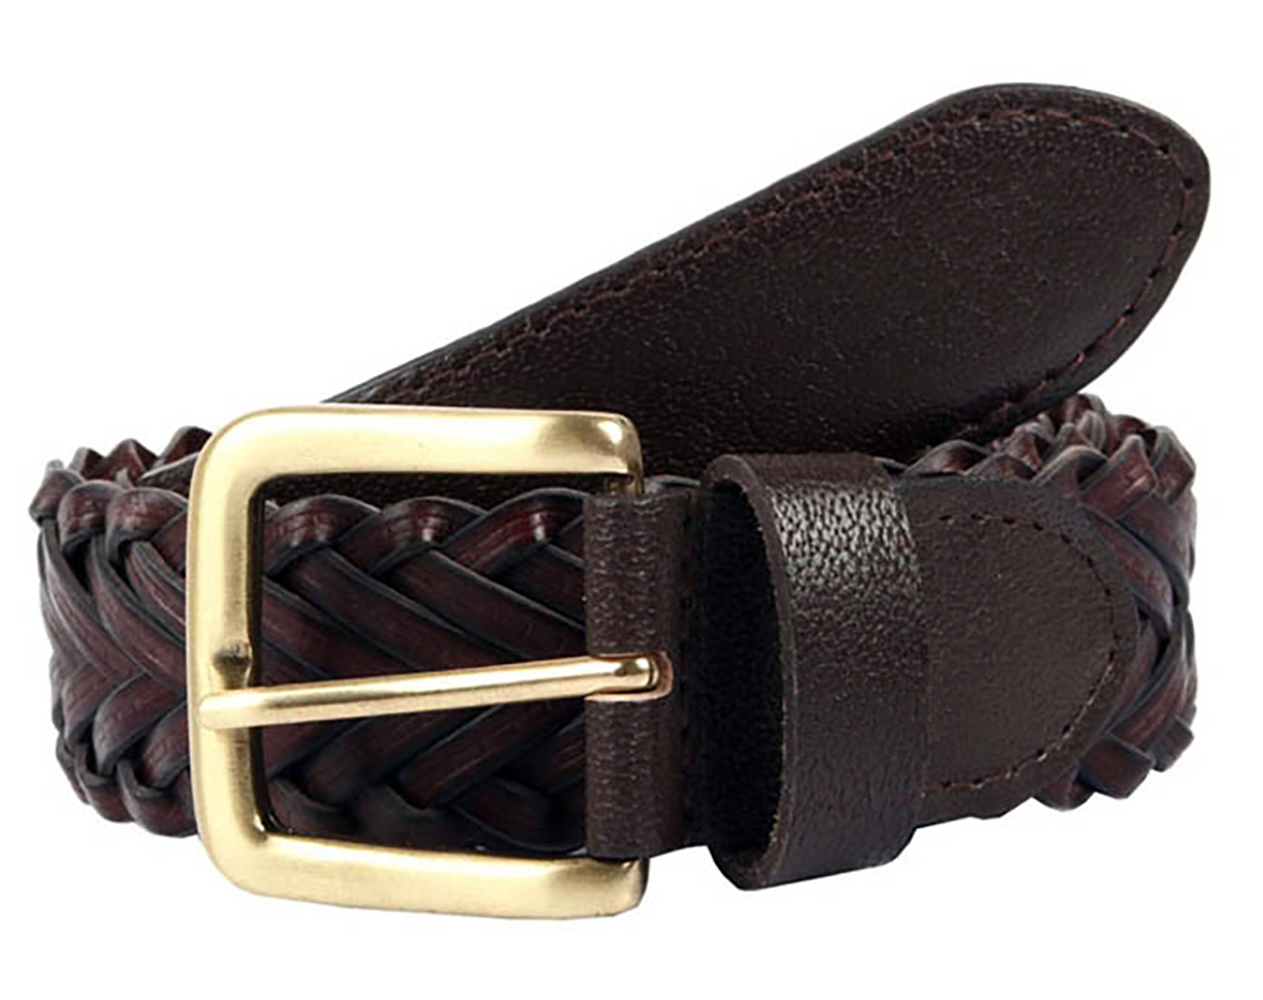 Dents plaited leather belt.